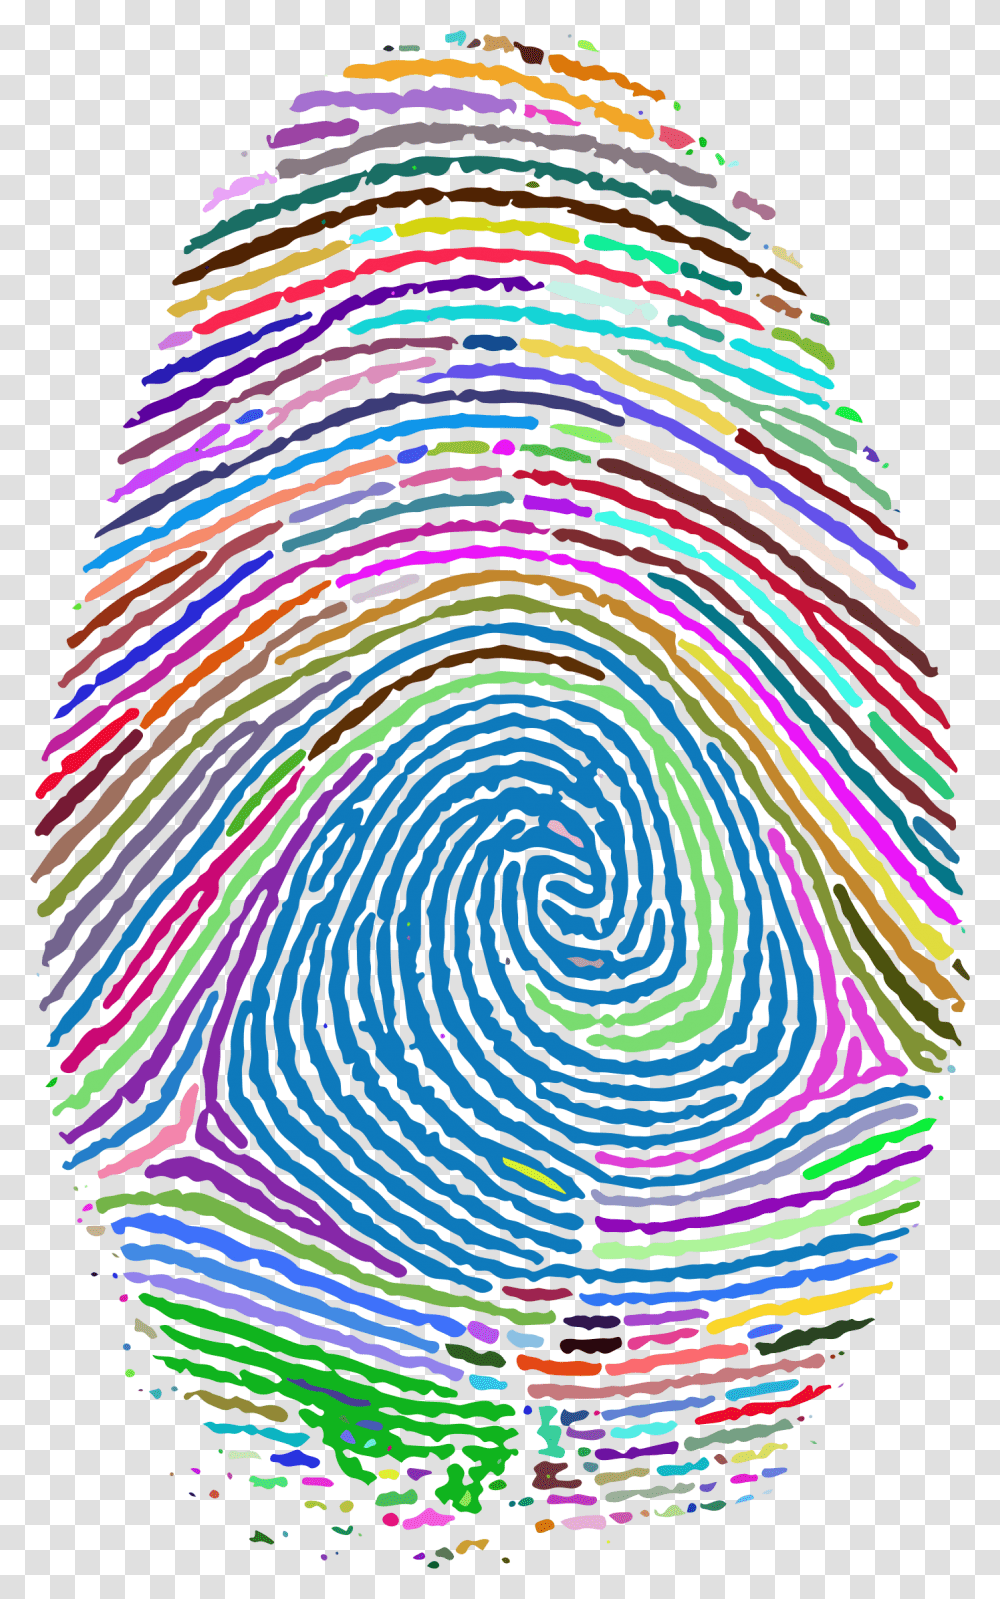 Fingerprint Footprint Clip Art Background Fingerprint, Spiral, Rug, Coil, Pattern Transparent Png